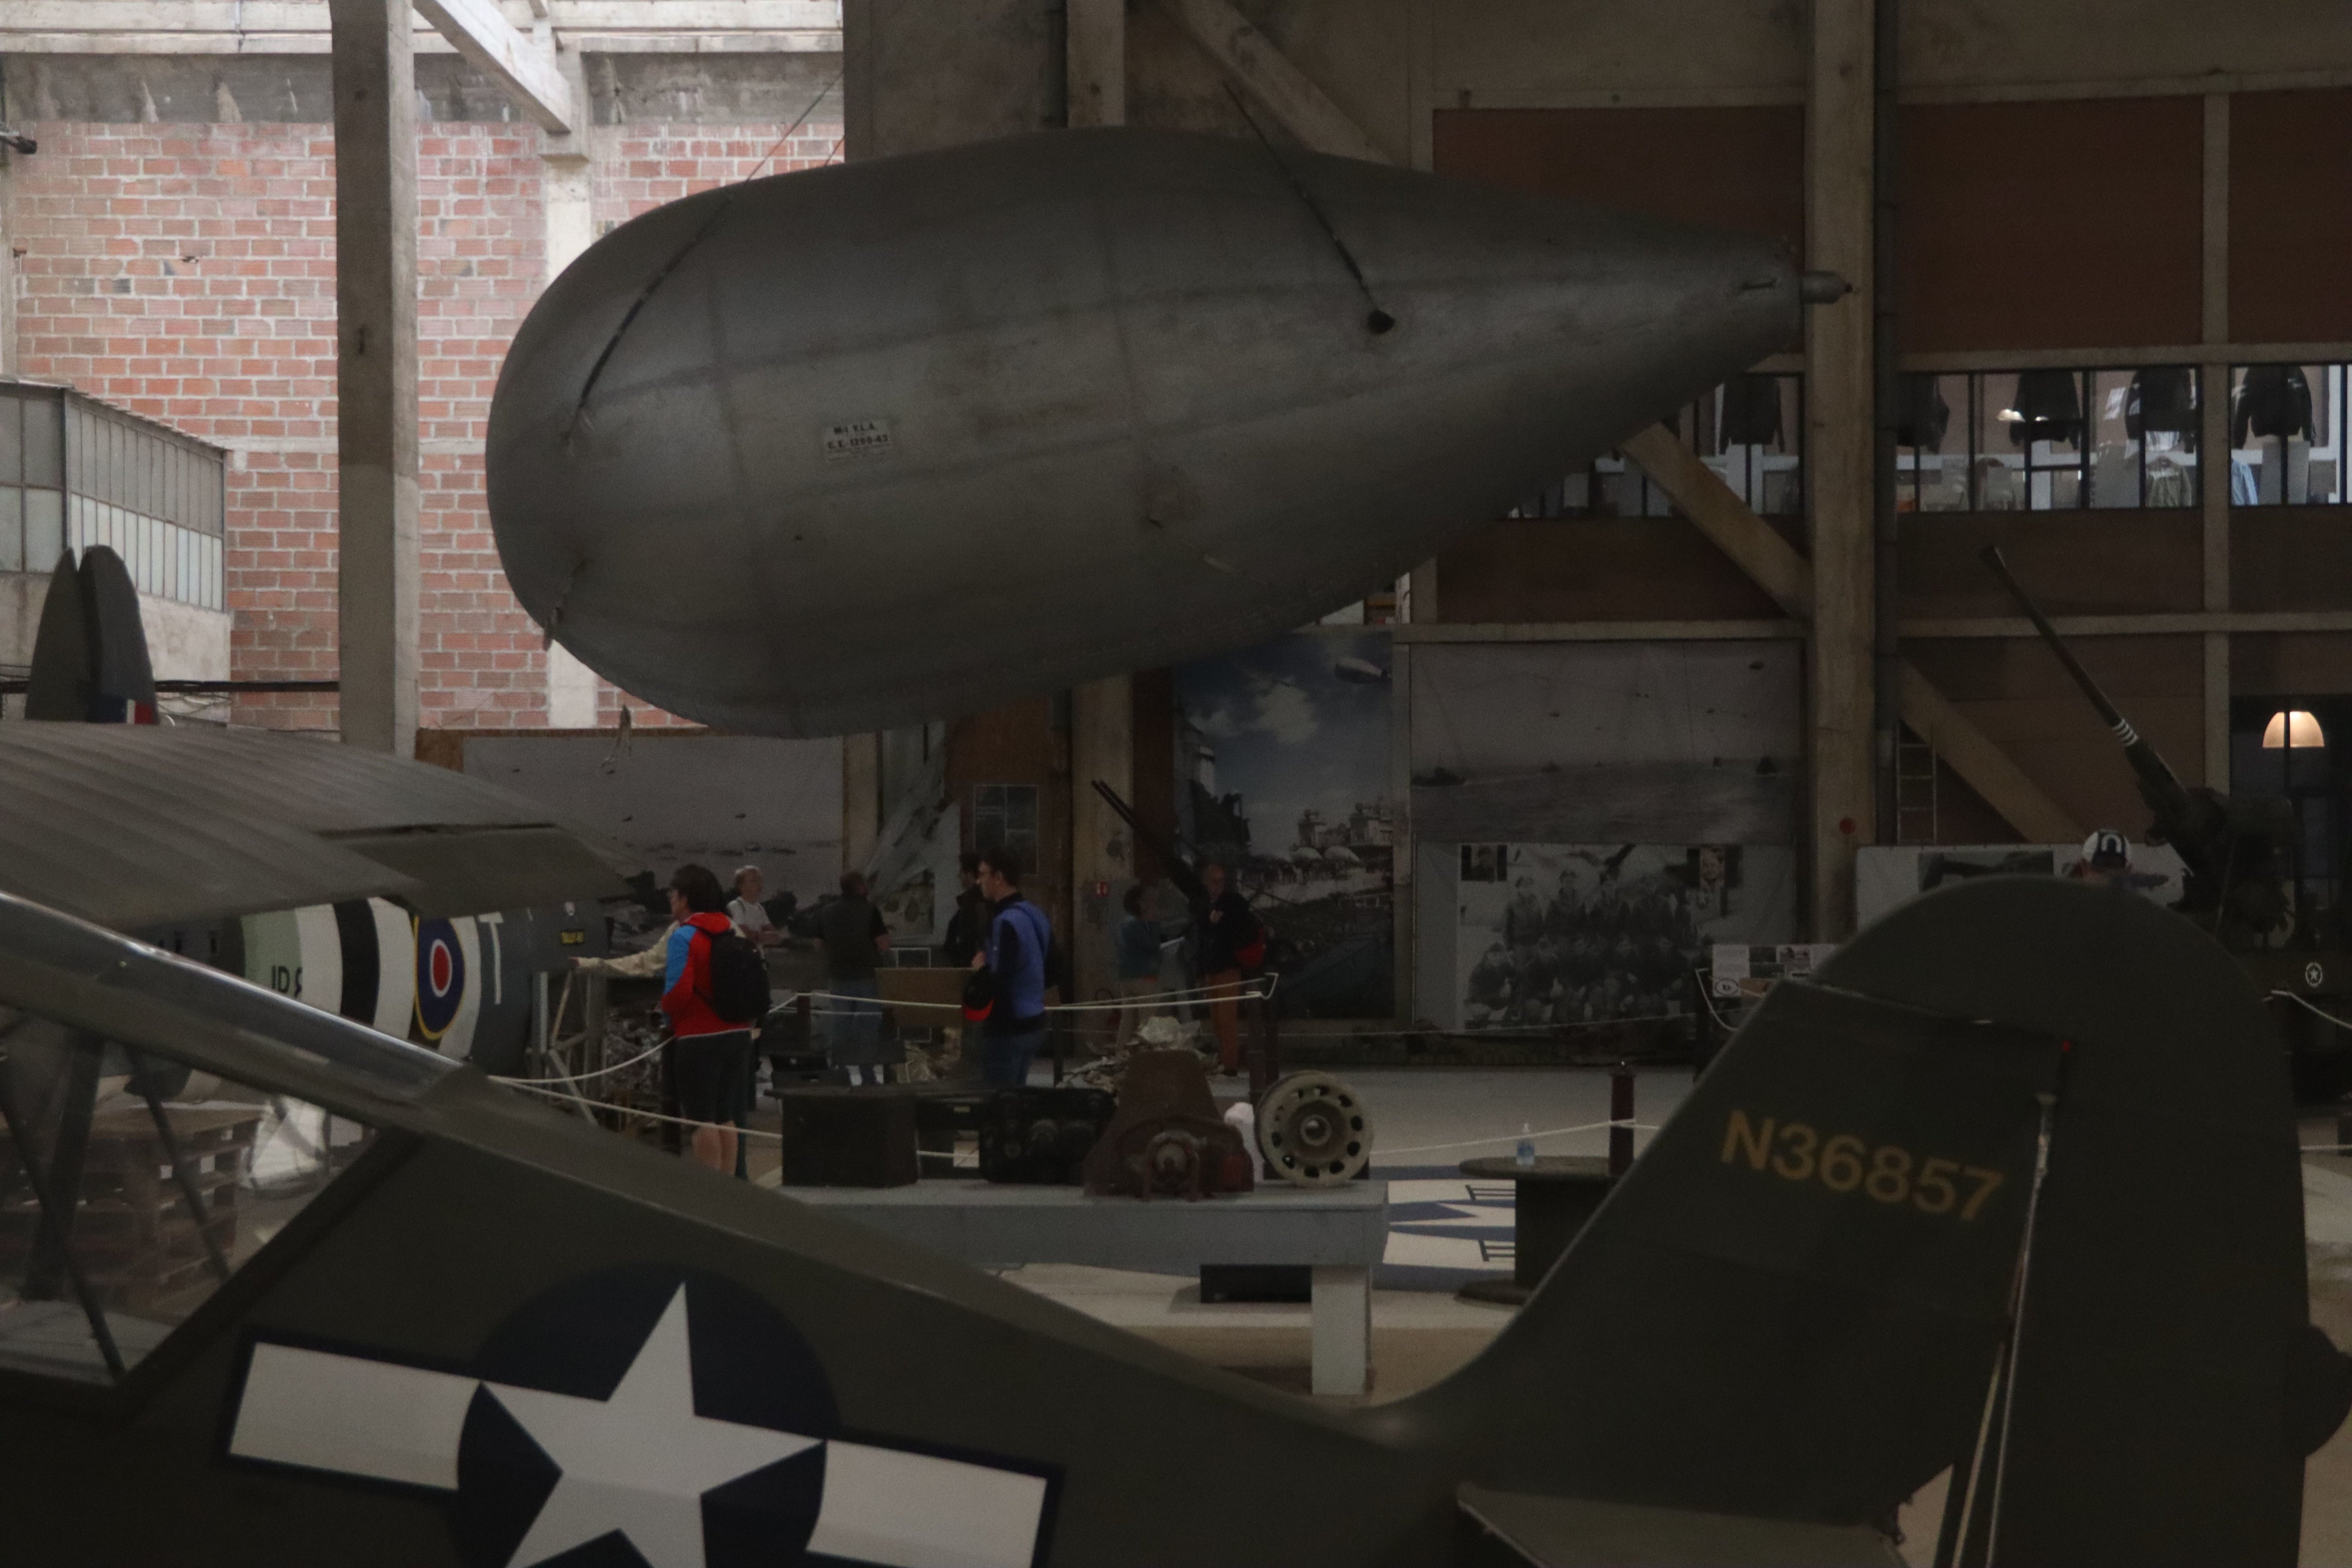 Le ballon de barrage américain du DDay wings museum date de 1943. Usé, il aurait besoin d'une rénovation, pour retrouver, notamment, sa queue, constituée de trois ailerons aujourd'hui trop détériorés pour être montés. LP/Esteban Pinel